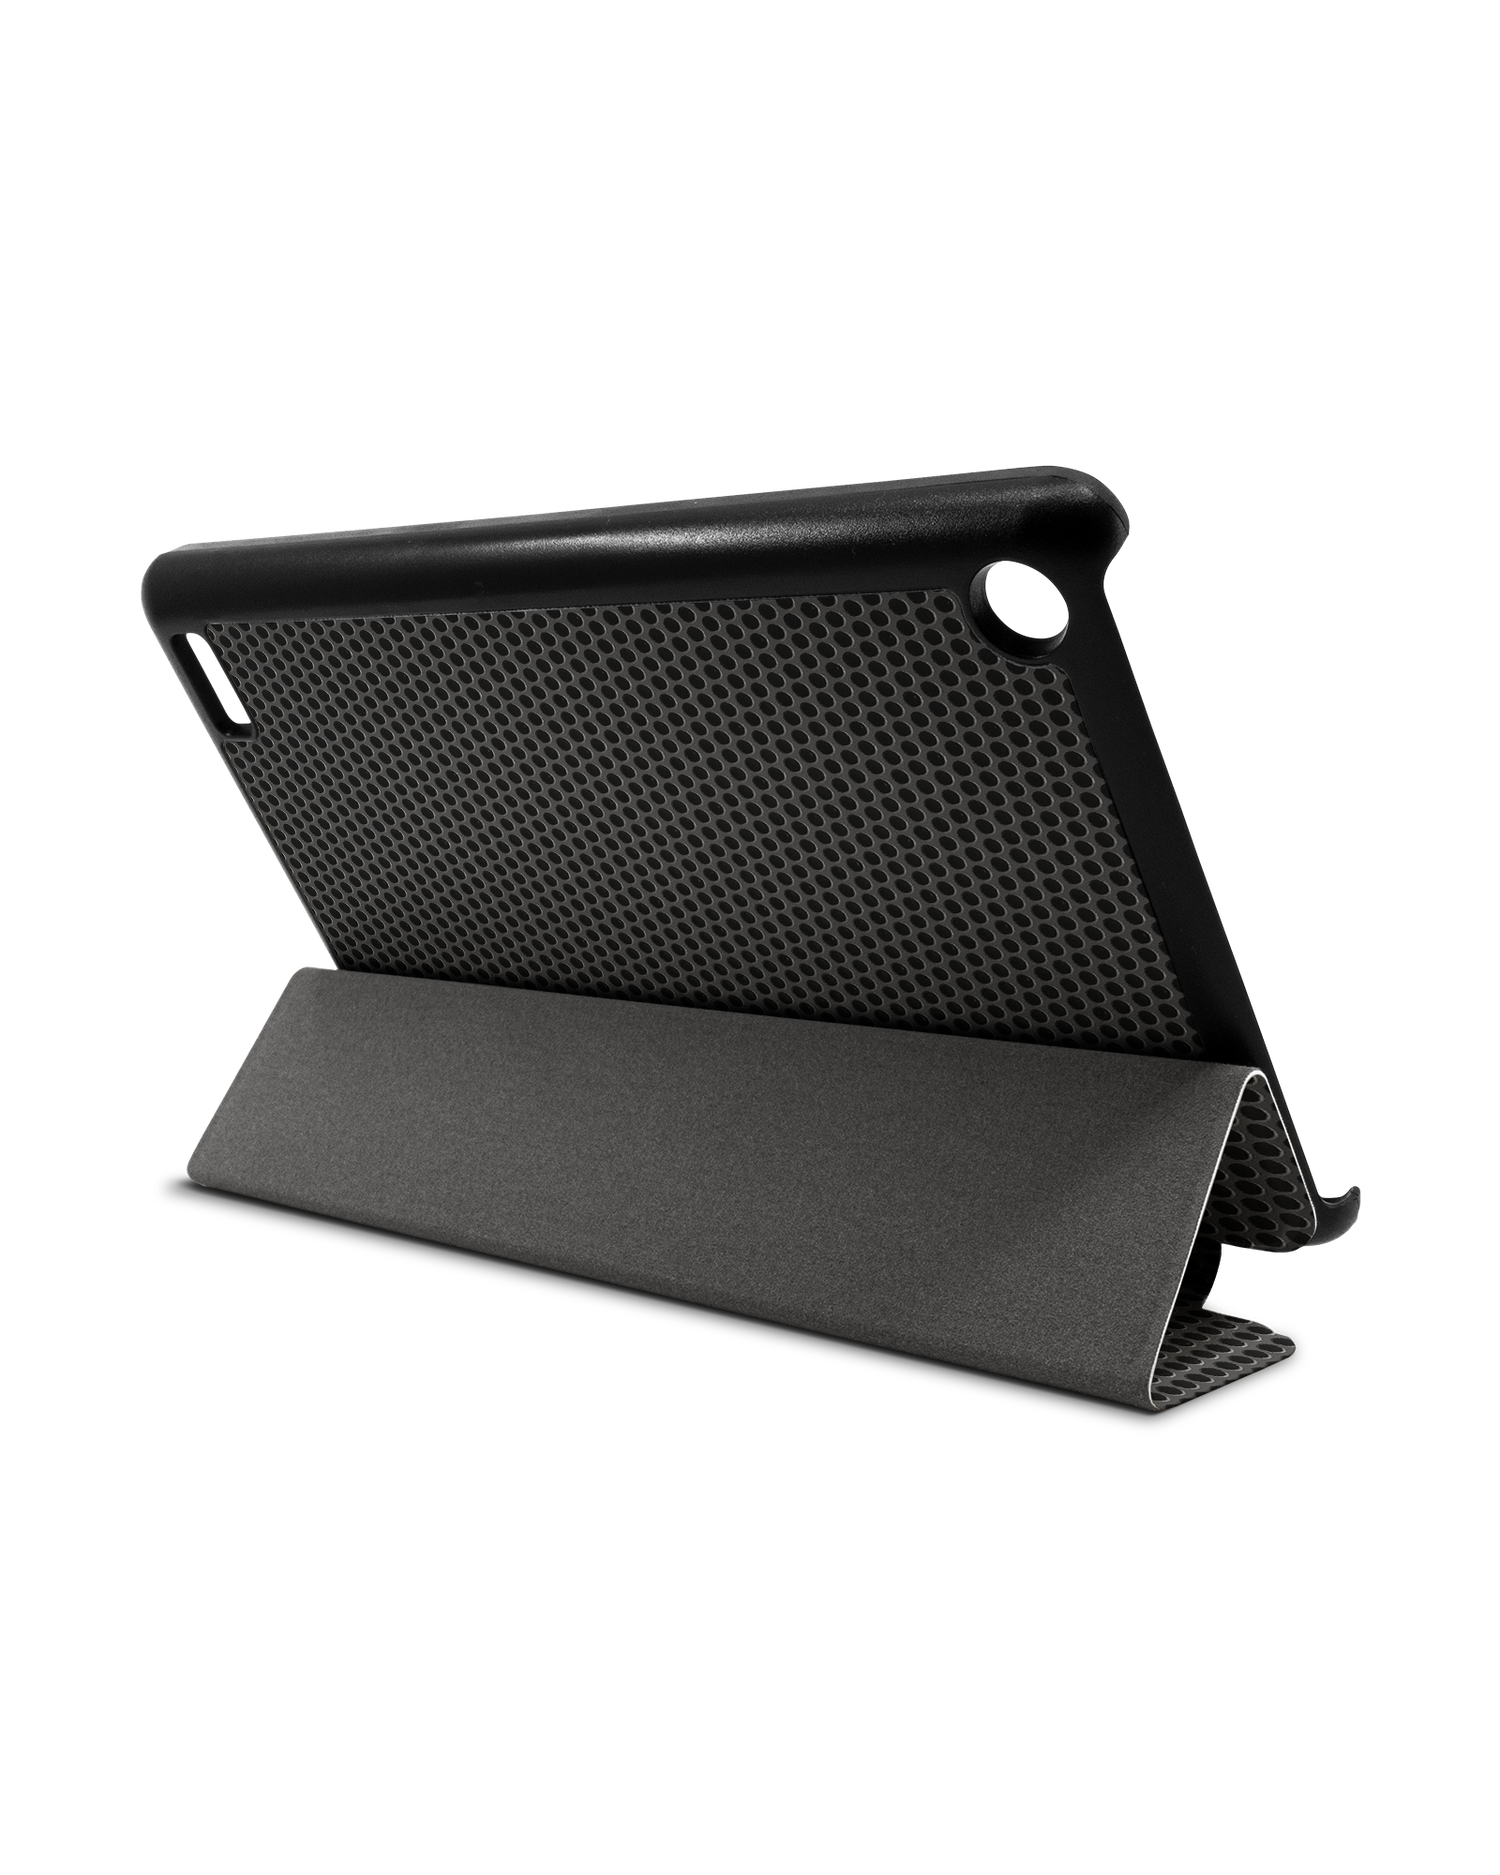 Carbon II Tablet Smart Case für Amazon Fire 7: Aufgestellt im Querformat